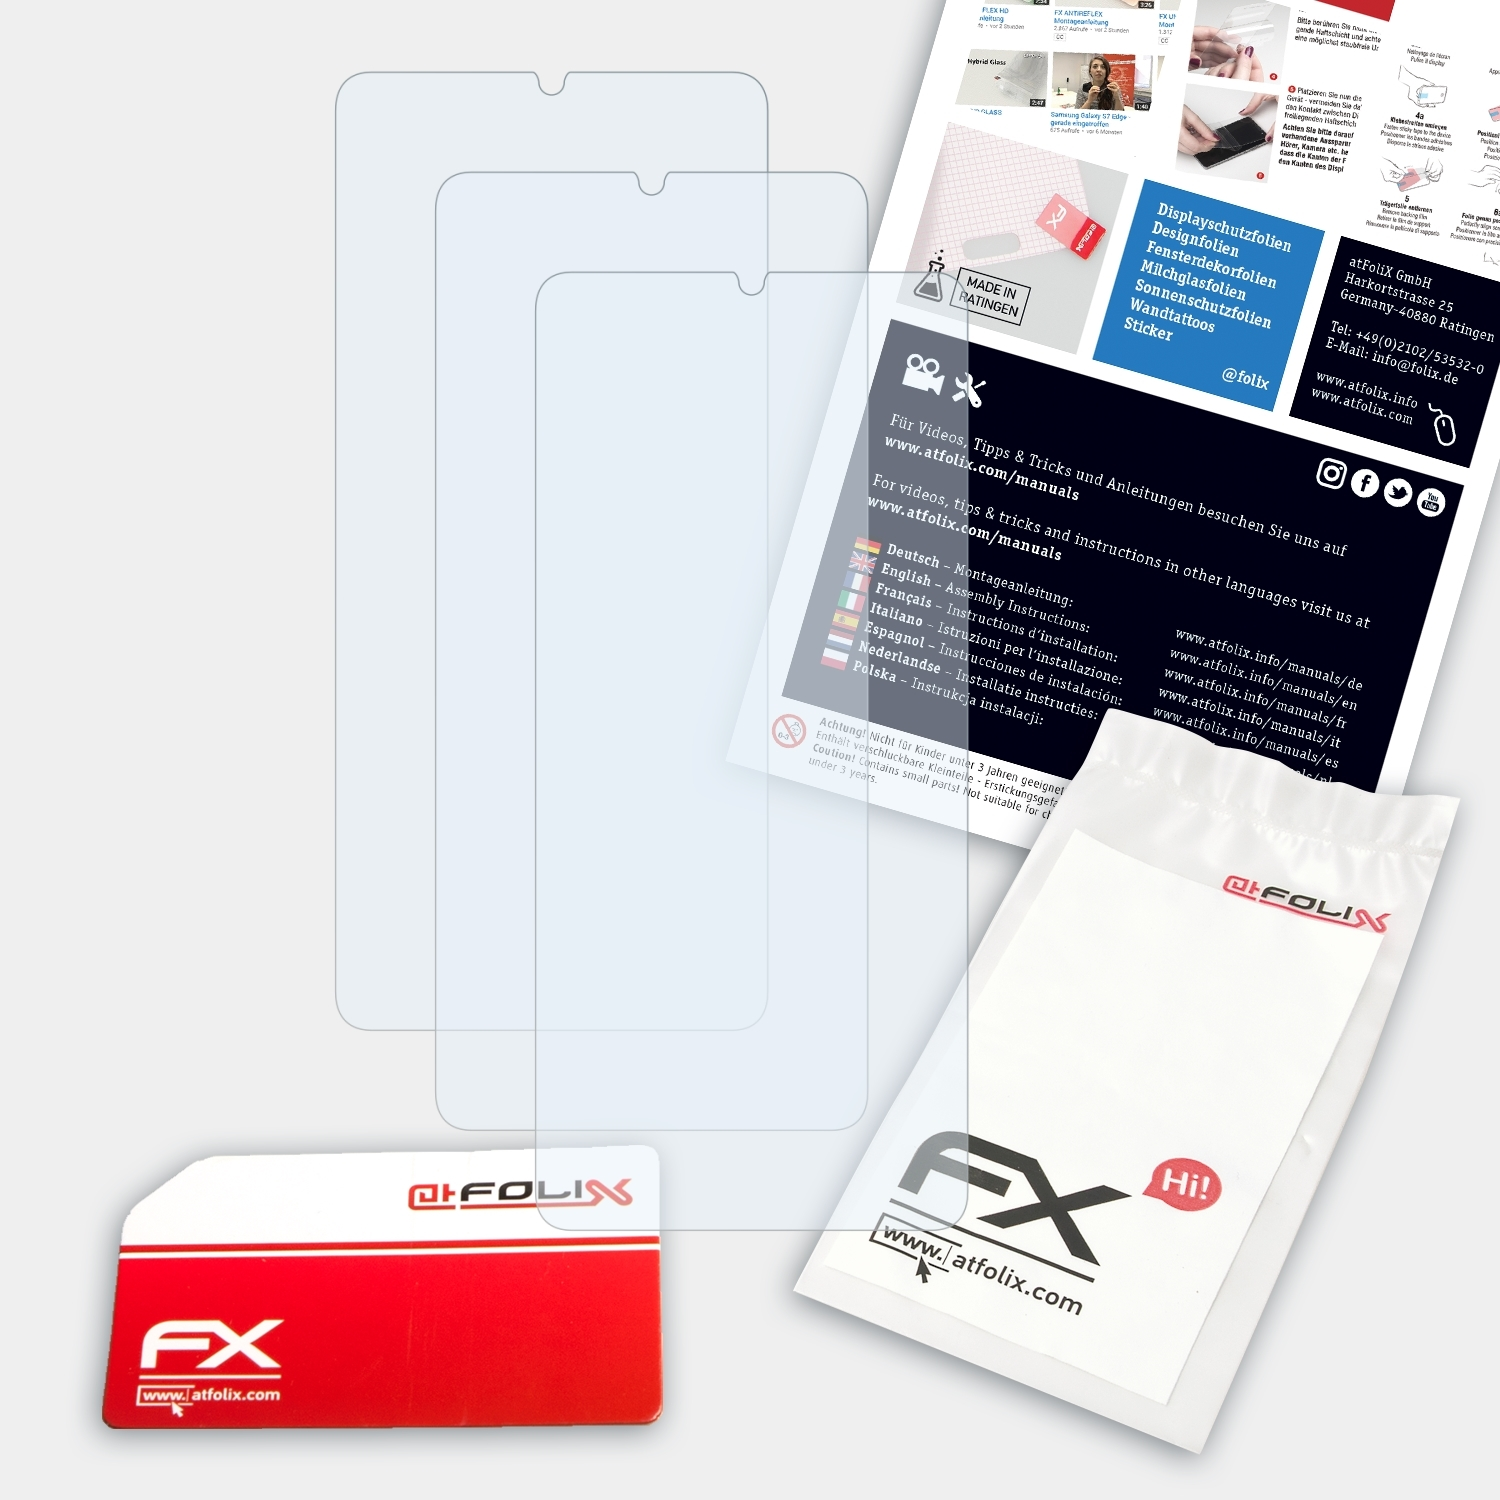 3x LG G8X ThinQ) ATFOLIX Displayschutz(für FX-Clear